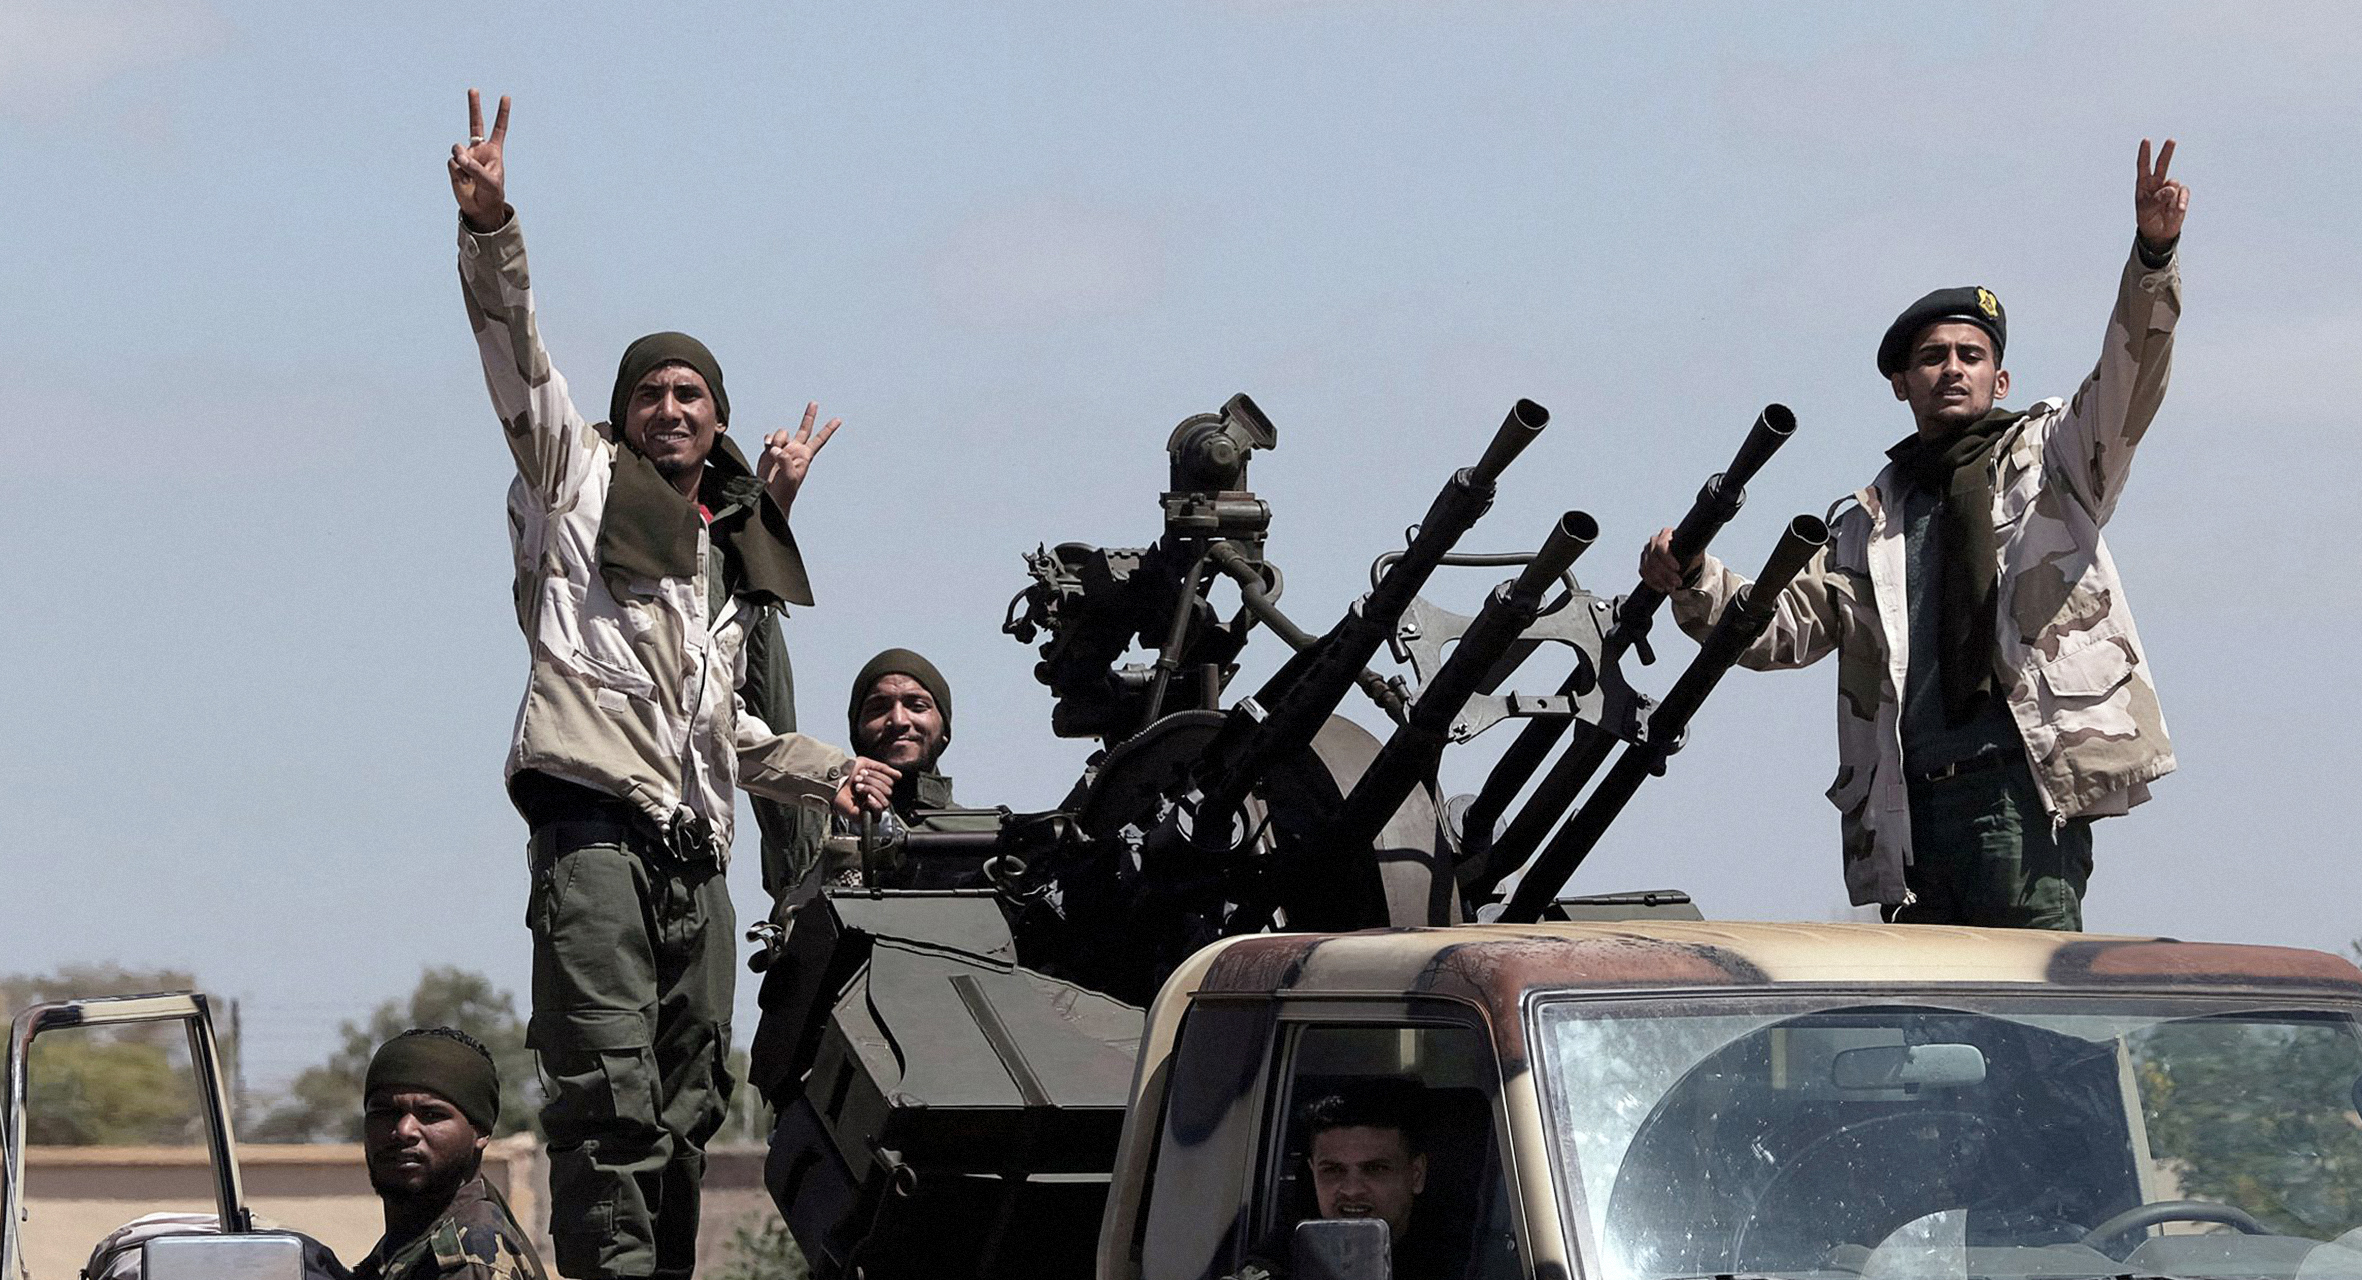 صورة إردوغان يرسل مقاتليه من المعارضة السورية للقتال في ليبيا حتّى لا يُقحم الأتراك بقضايا العرب